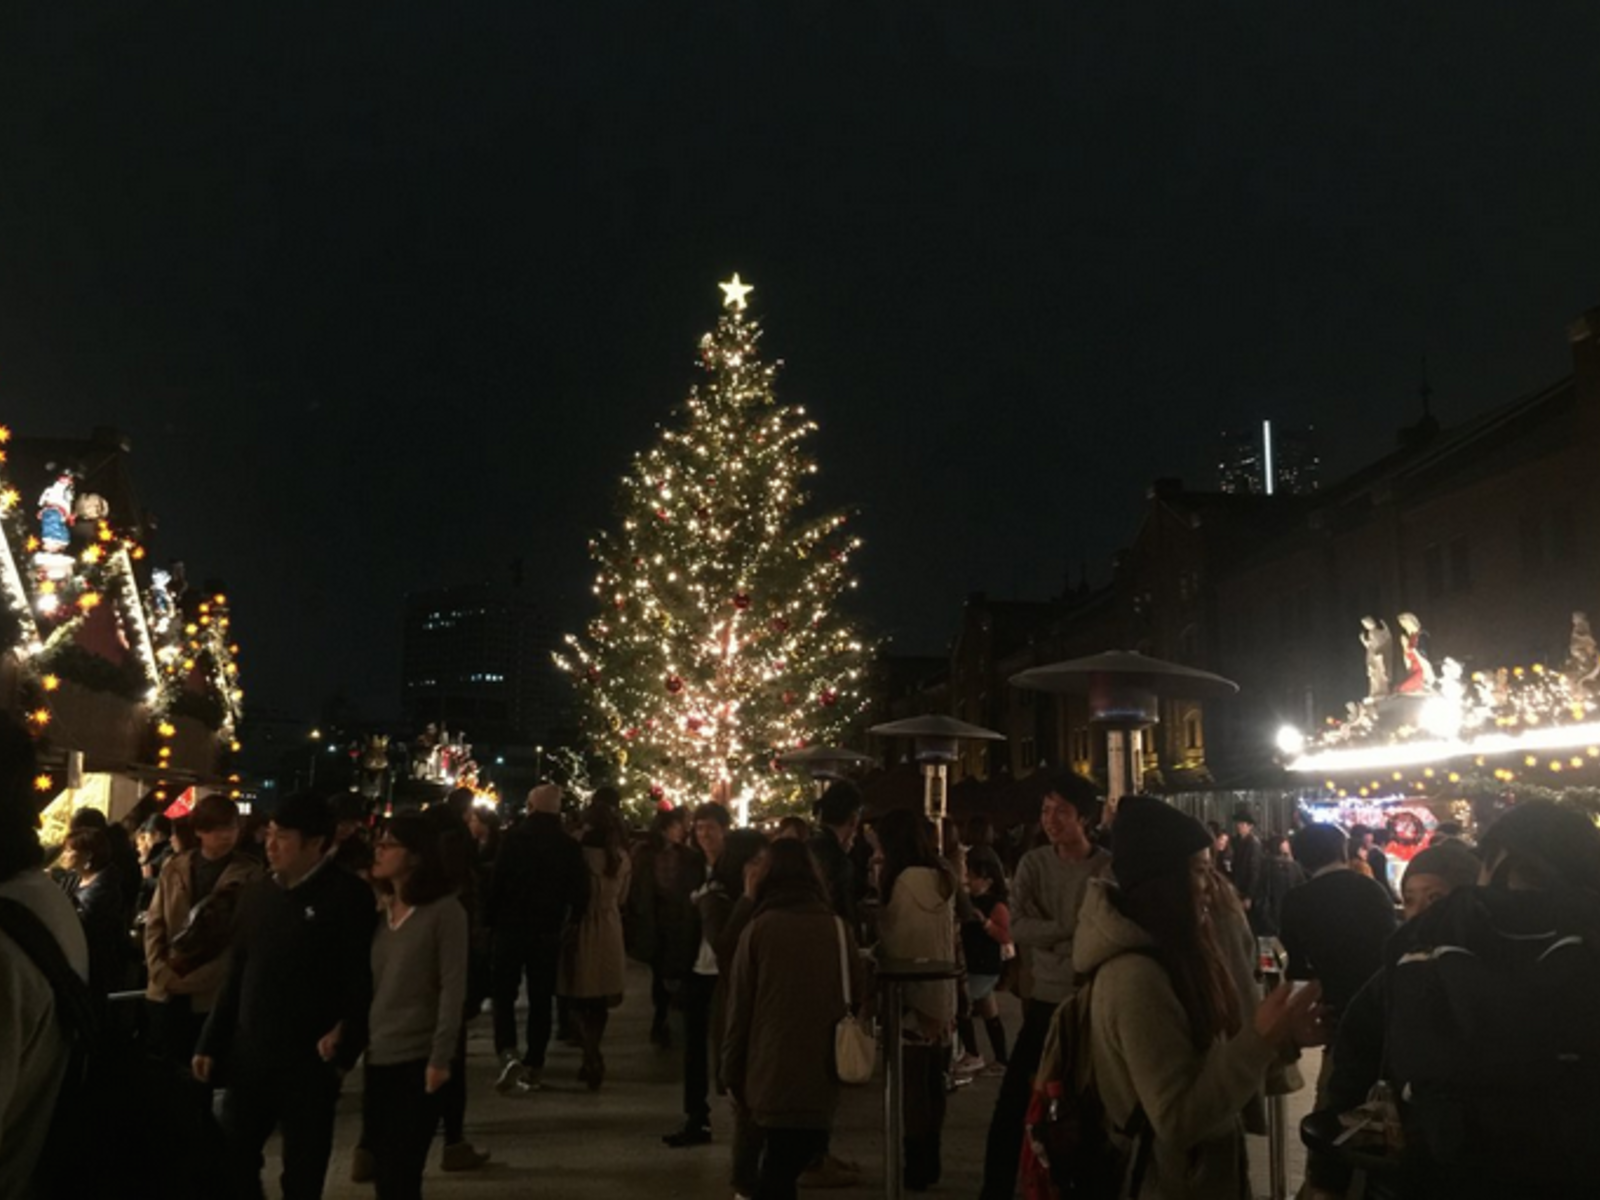 クリスマスは横浜 赤レンガ倉庫 のイルミネーションへ カップルでクリスマスマーケットを楽しもう Playlife プレイライフ